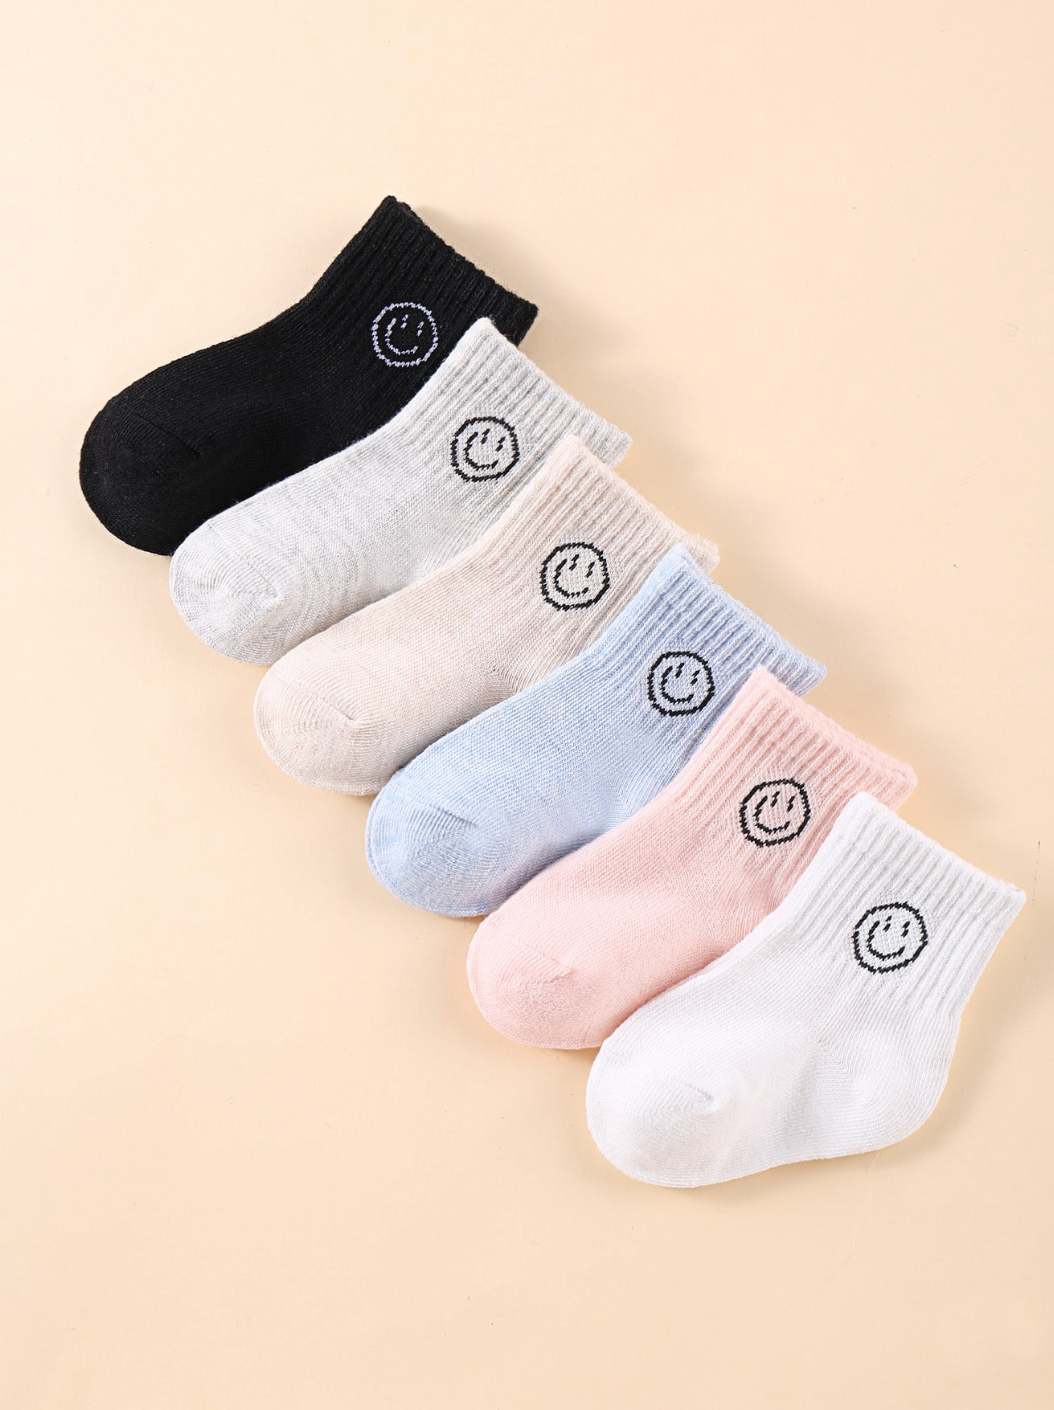 Emoji Baby Socks - Twinkle Twinkle Little One